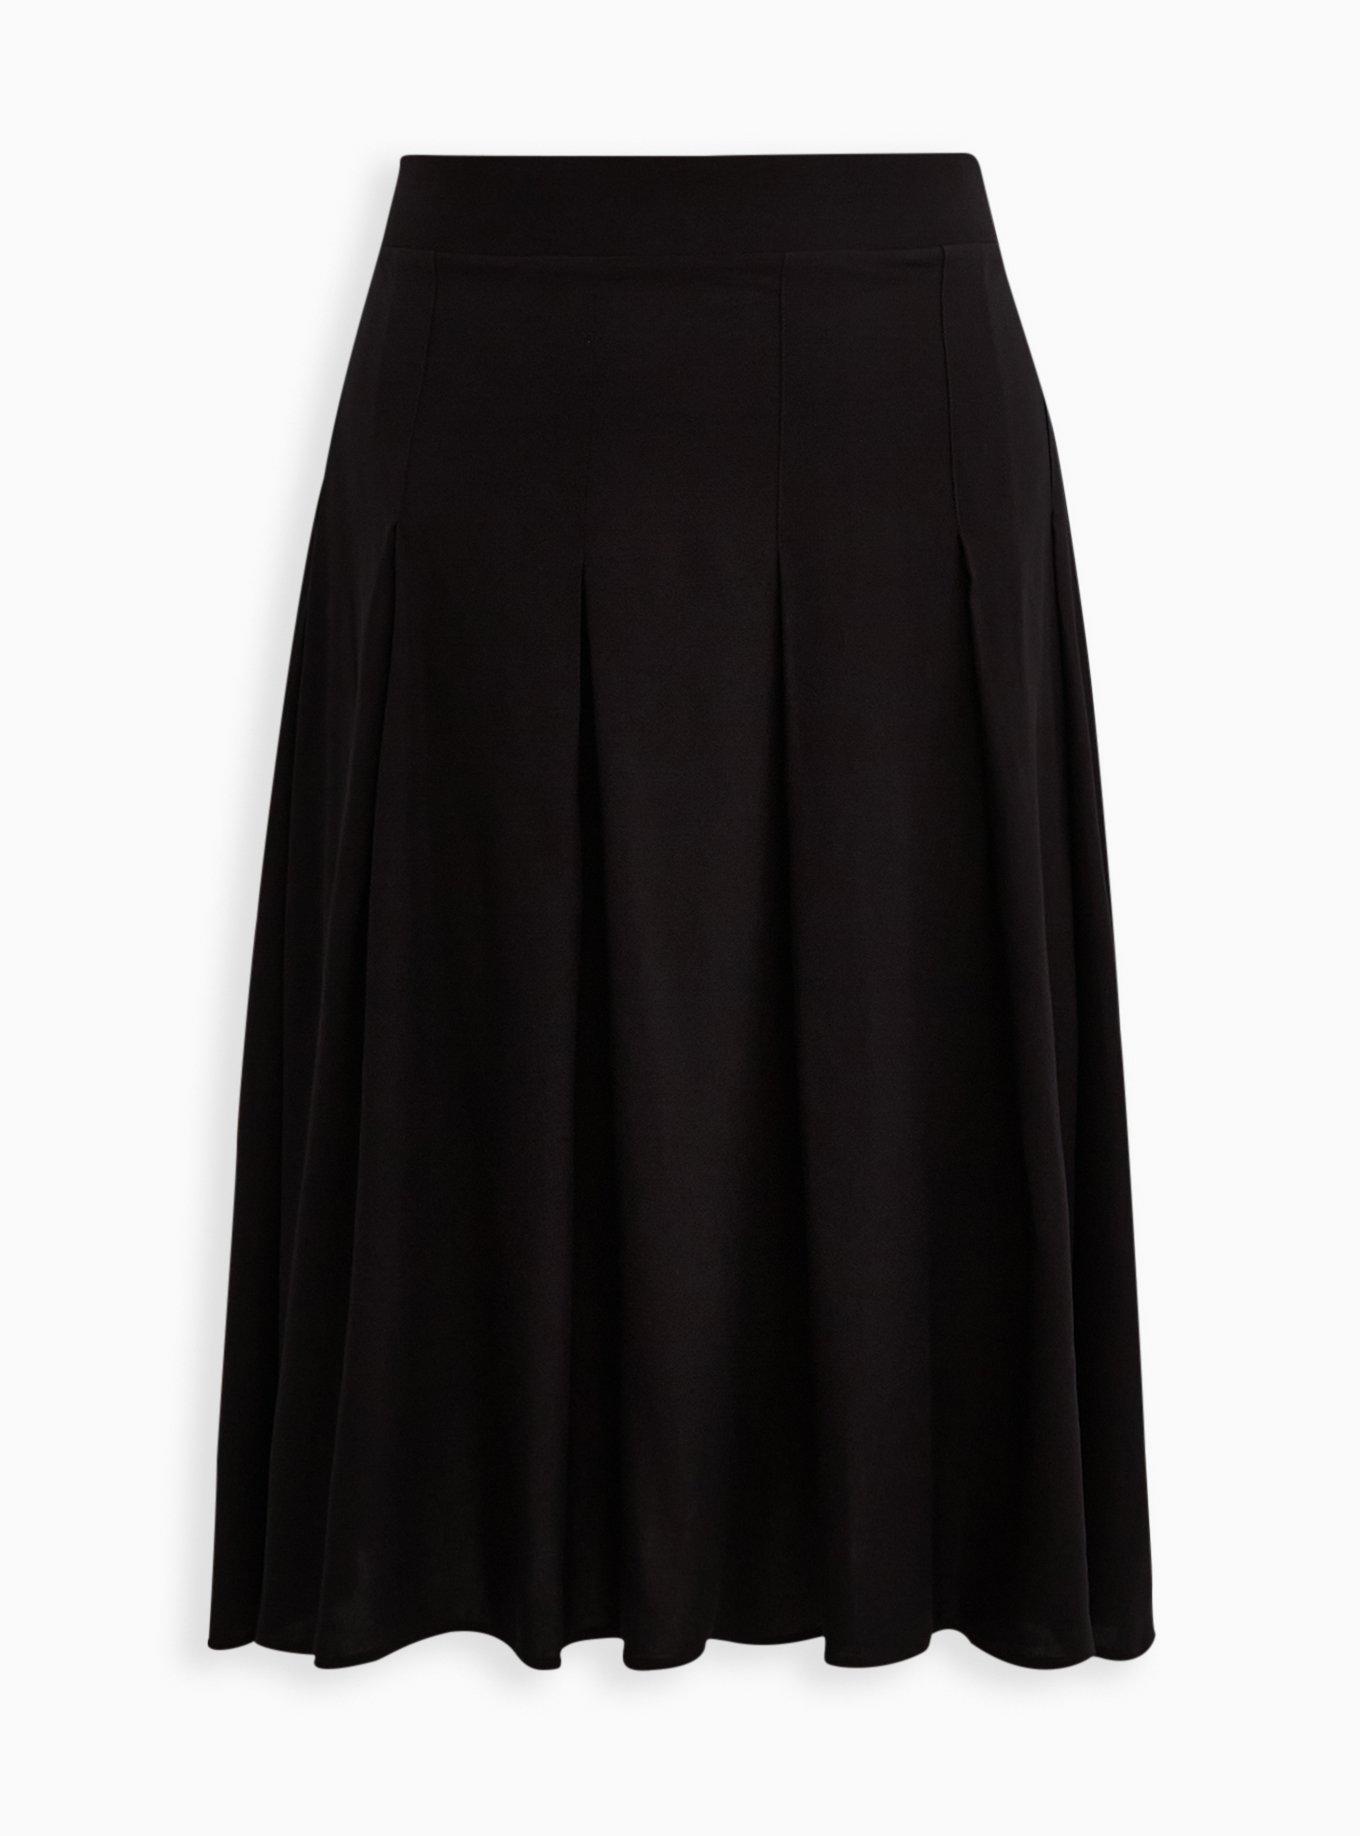 Plus Size - High Waisted Pleated Midi Skirt - Challis Black - Torrid